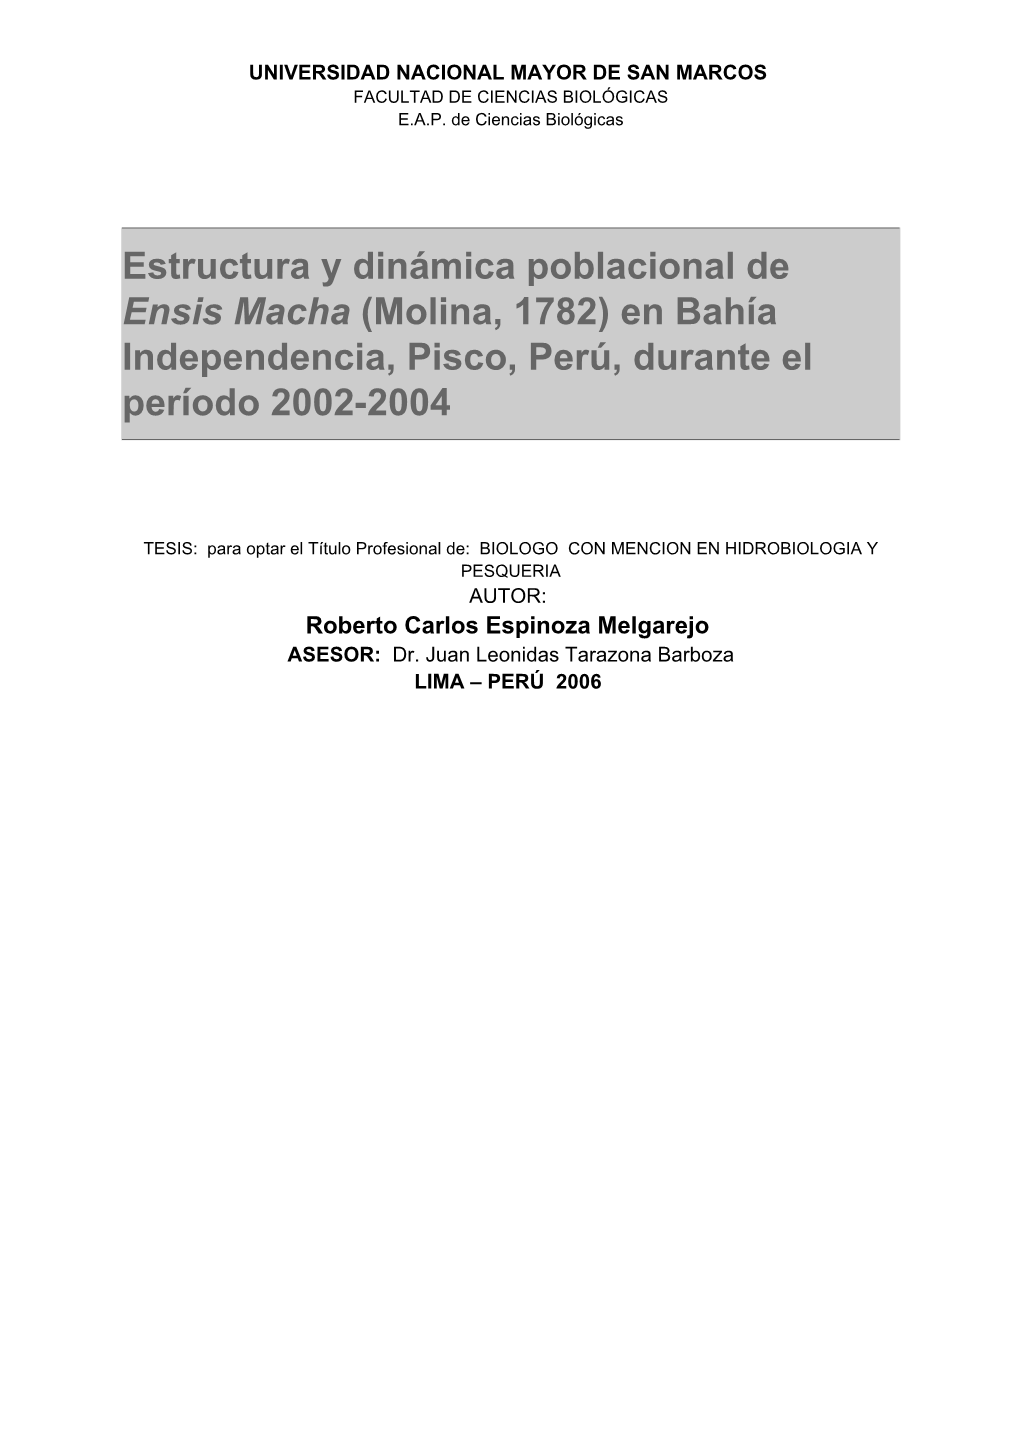 ESTRUCTURA Y DINÁMICA POBLACIONAL DE Ensis Macha (MOLINA, 1782) EN BAHÍA INDEPENDENCIA, PISCO, PERÚ, DURANTE EL PERÍODO 2002-2004